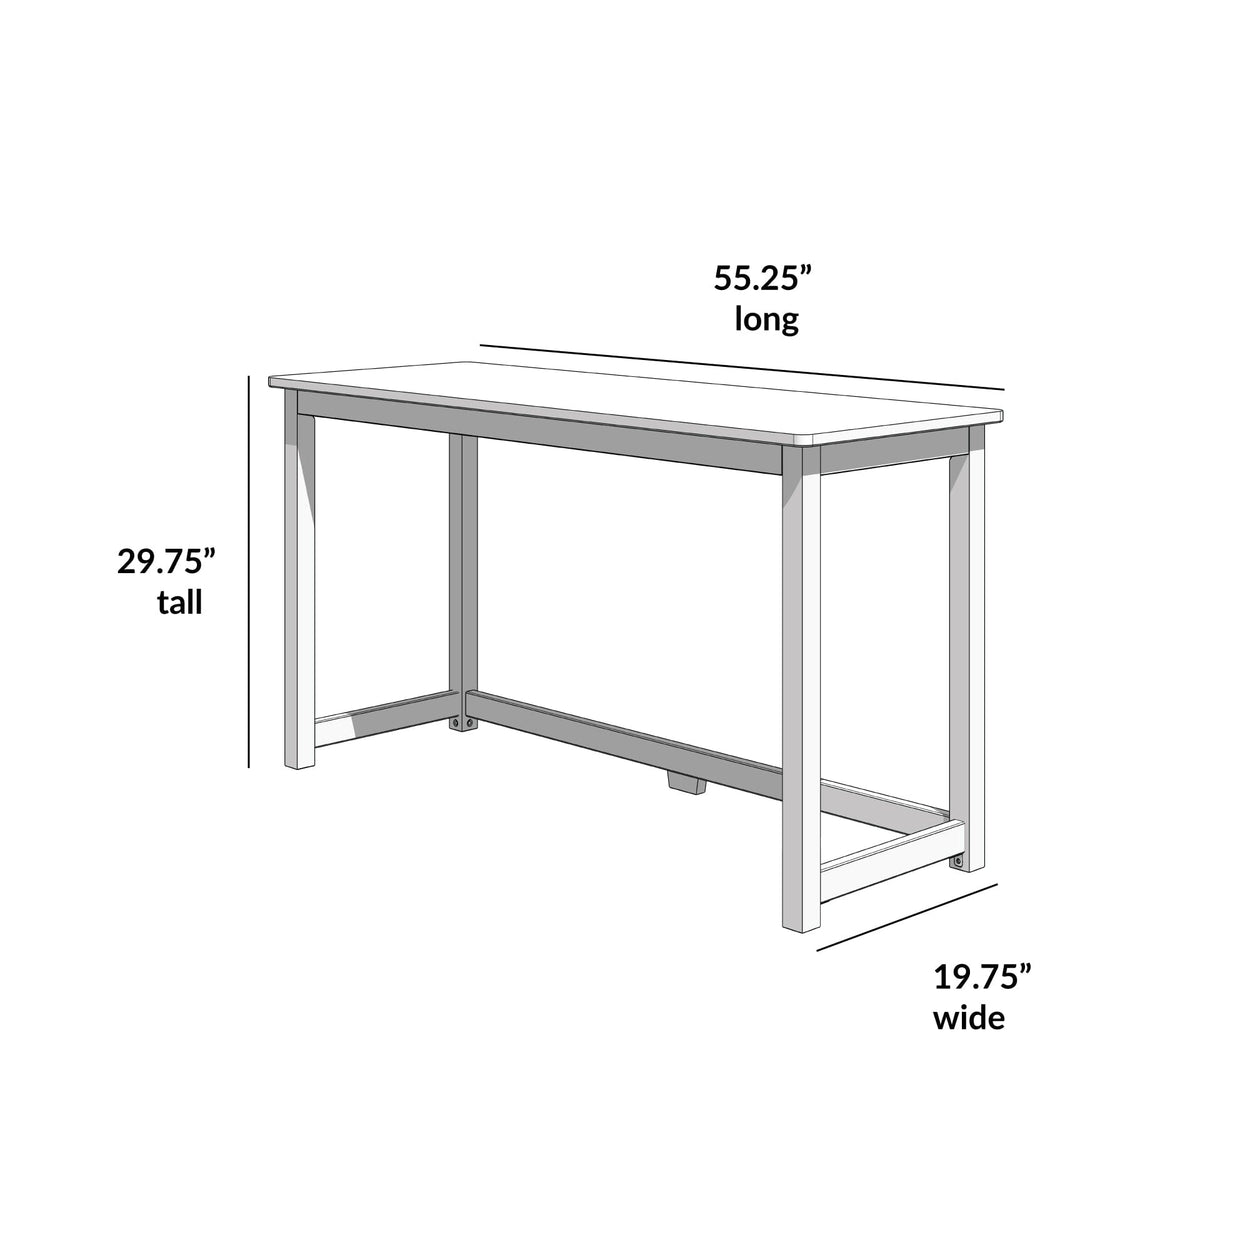 181400-002 : Furniture Simple Desk - 55 inches, White